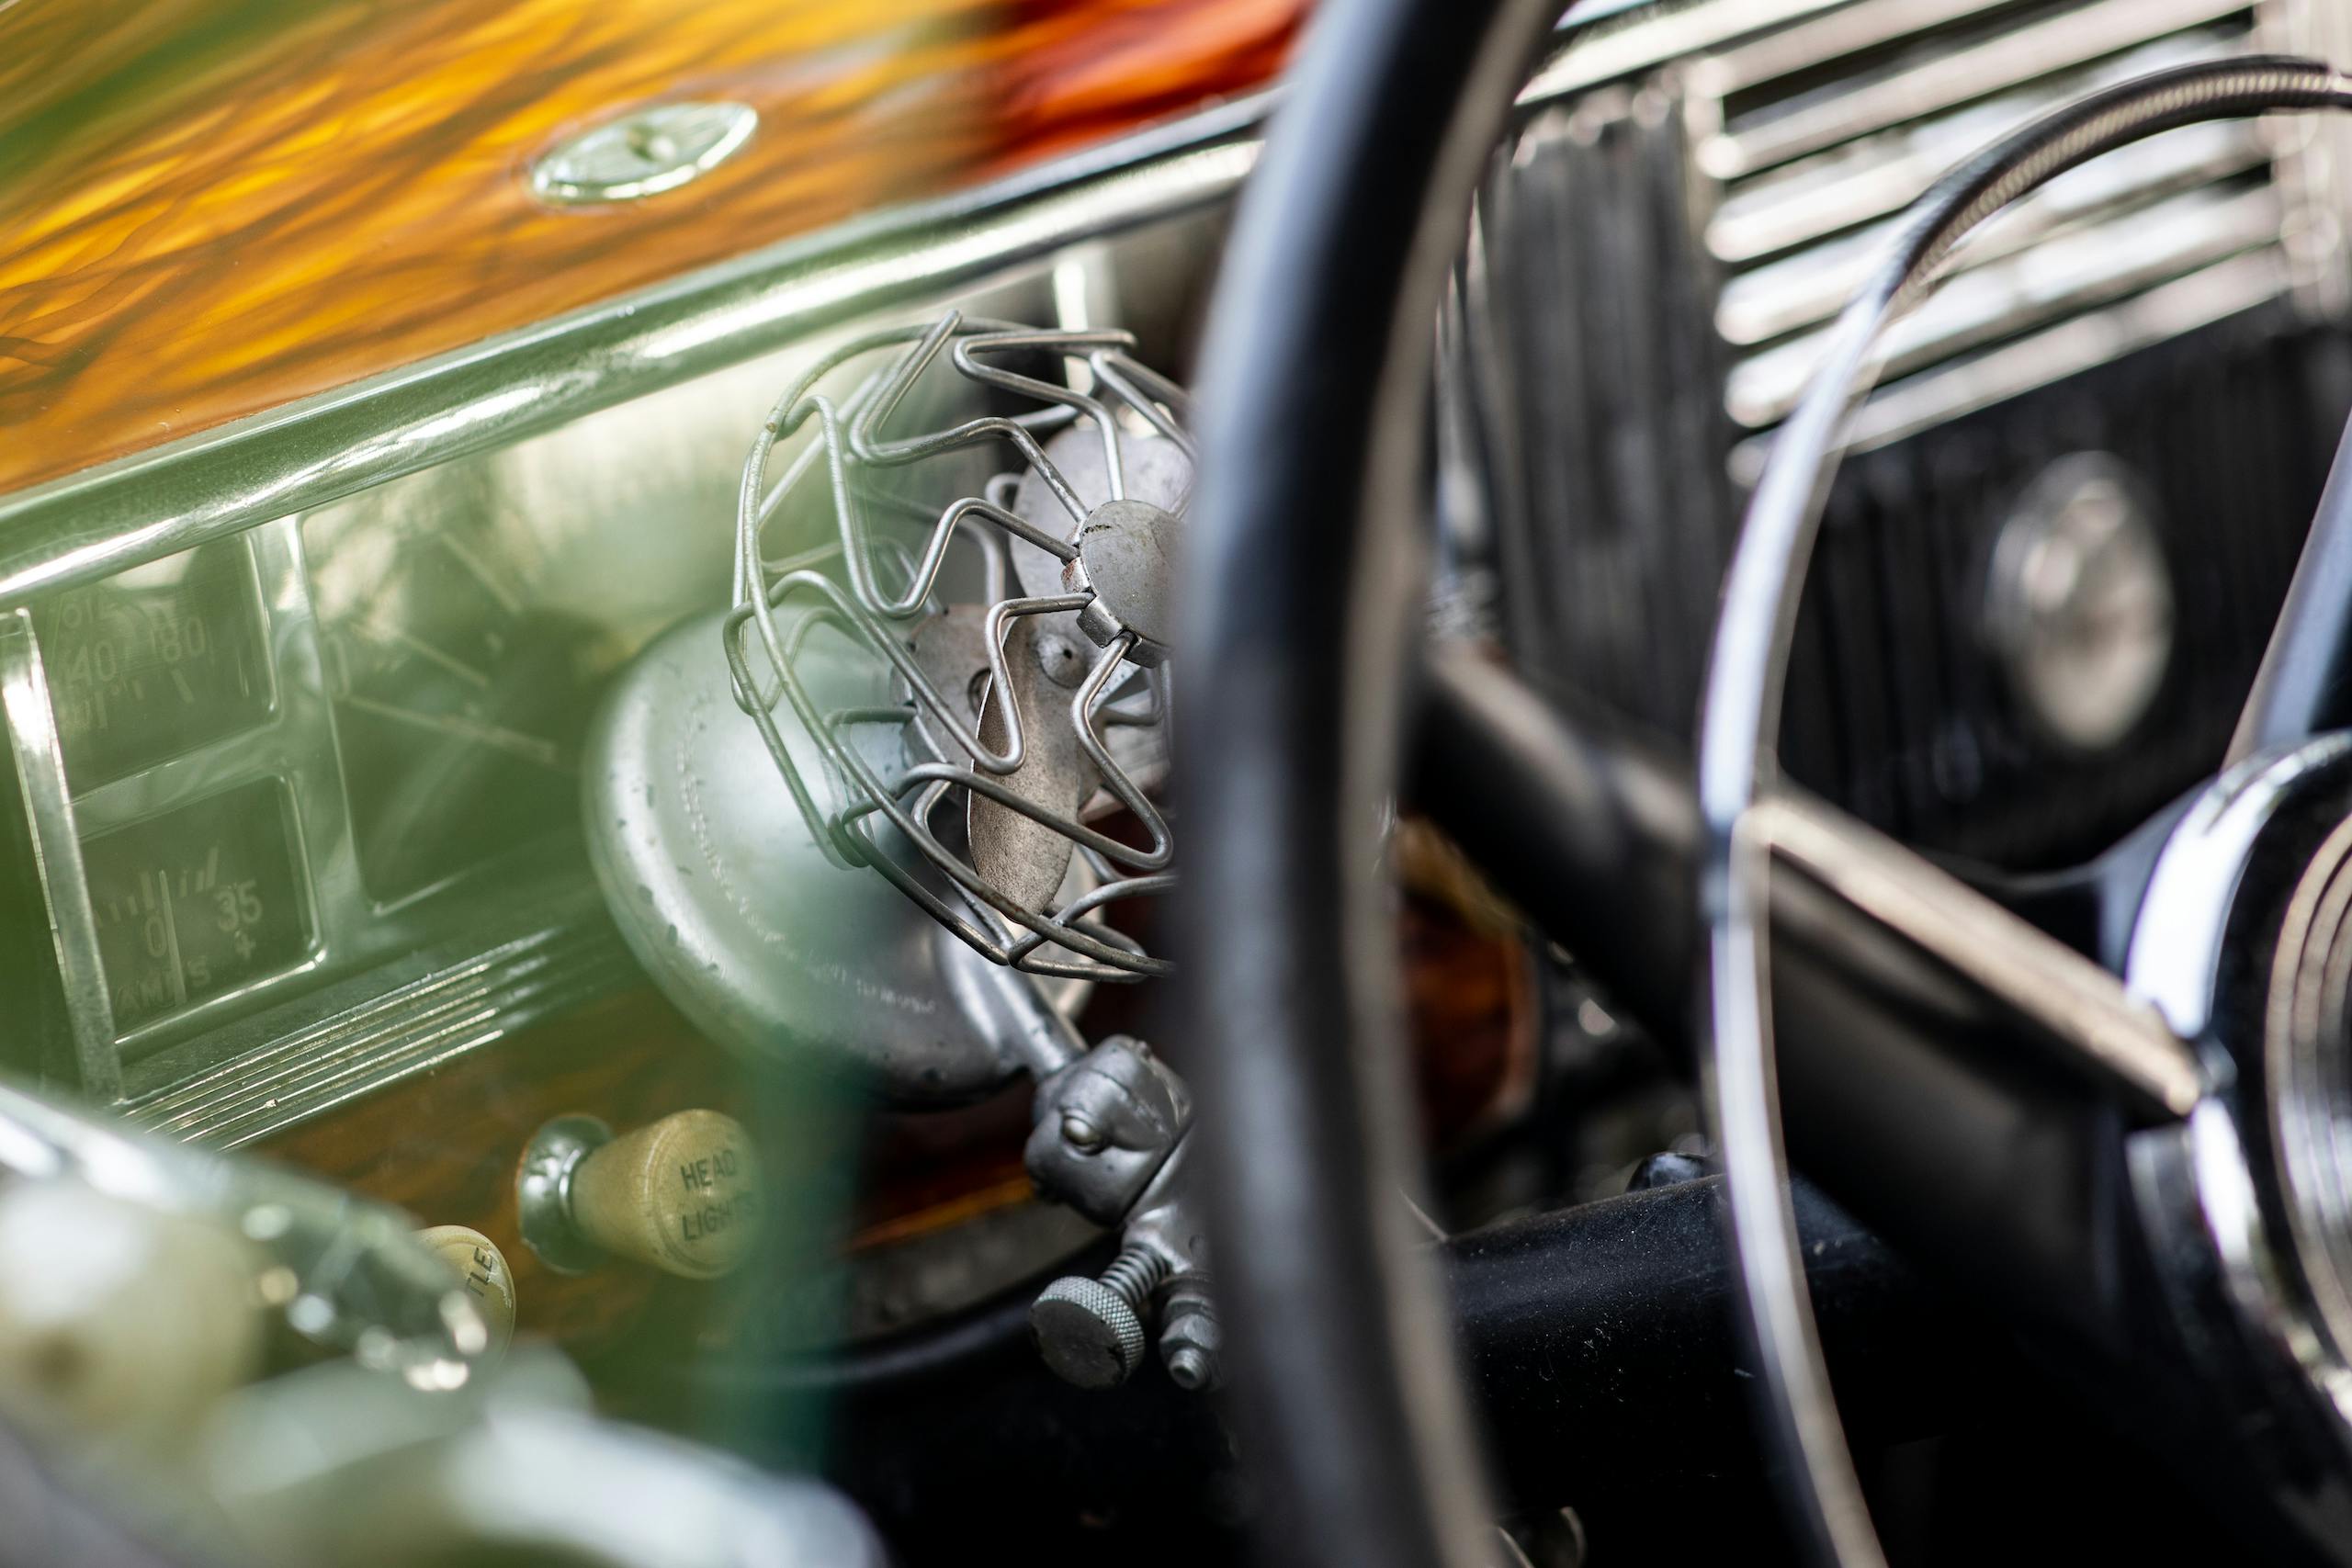 1947 Plymouth steering column fan